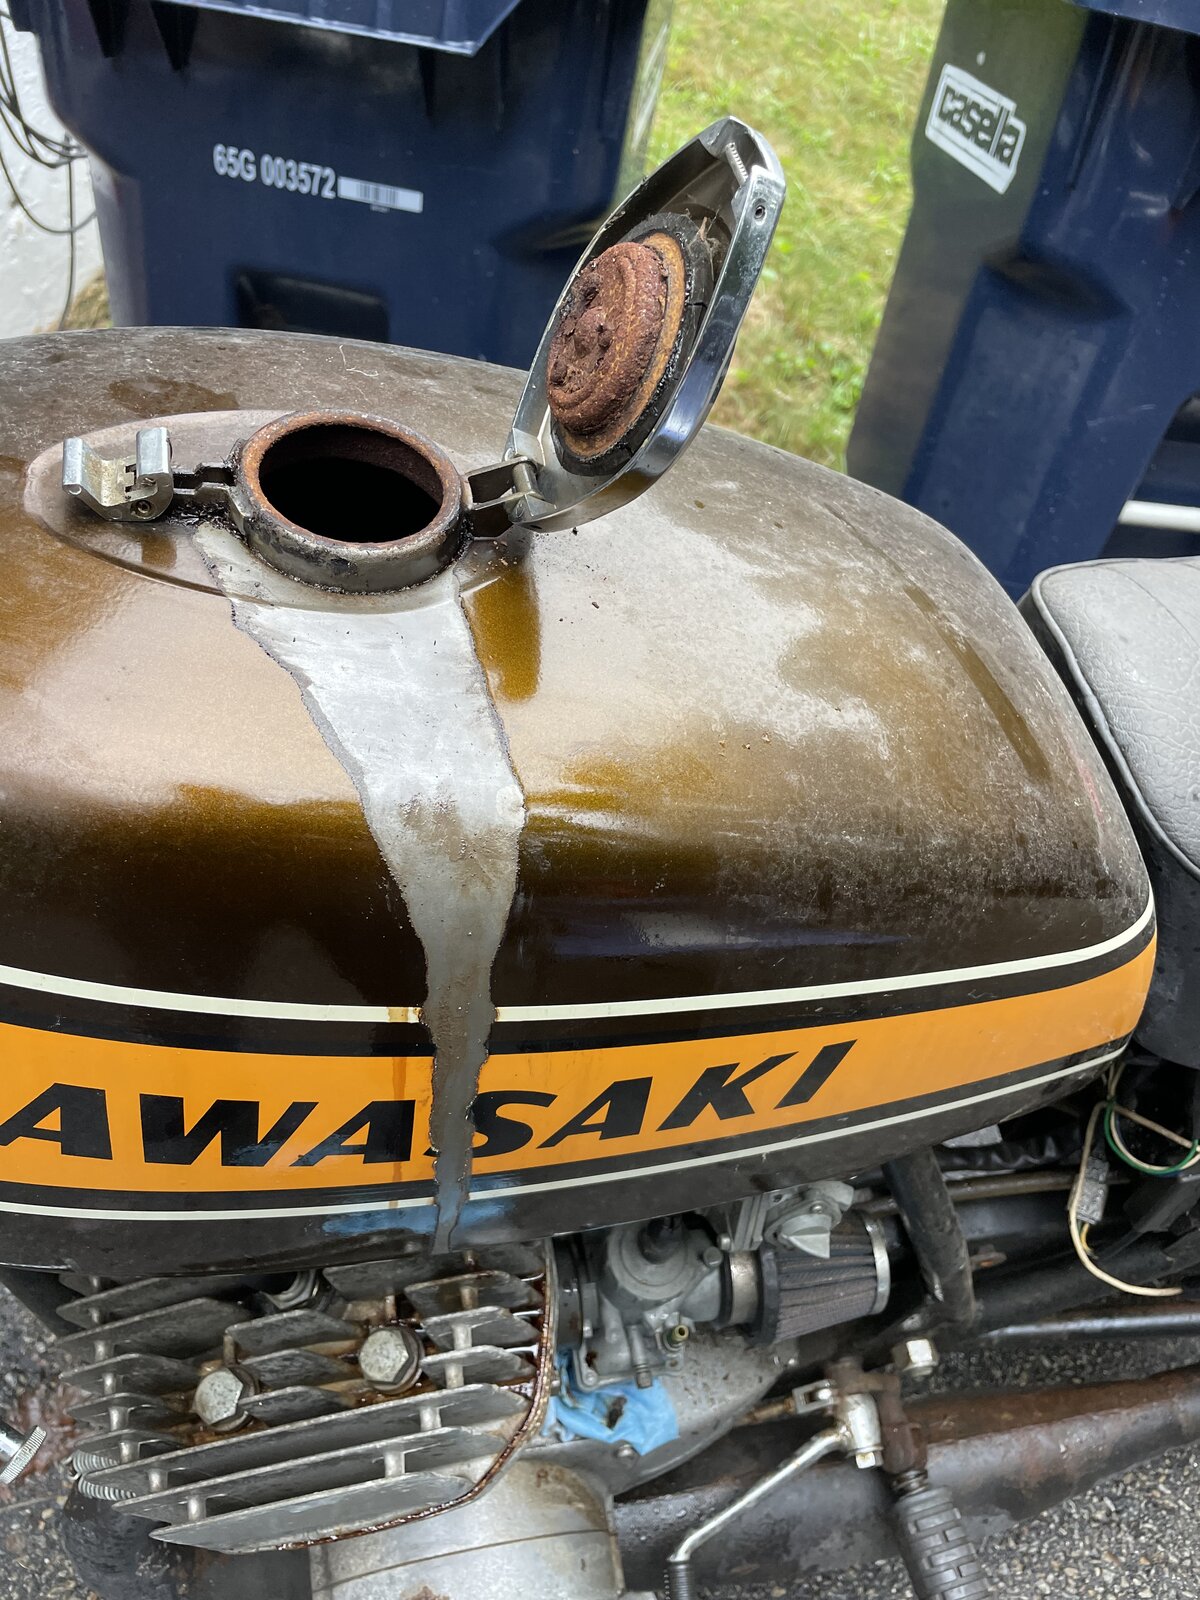 Rusty bike fuel tanks